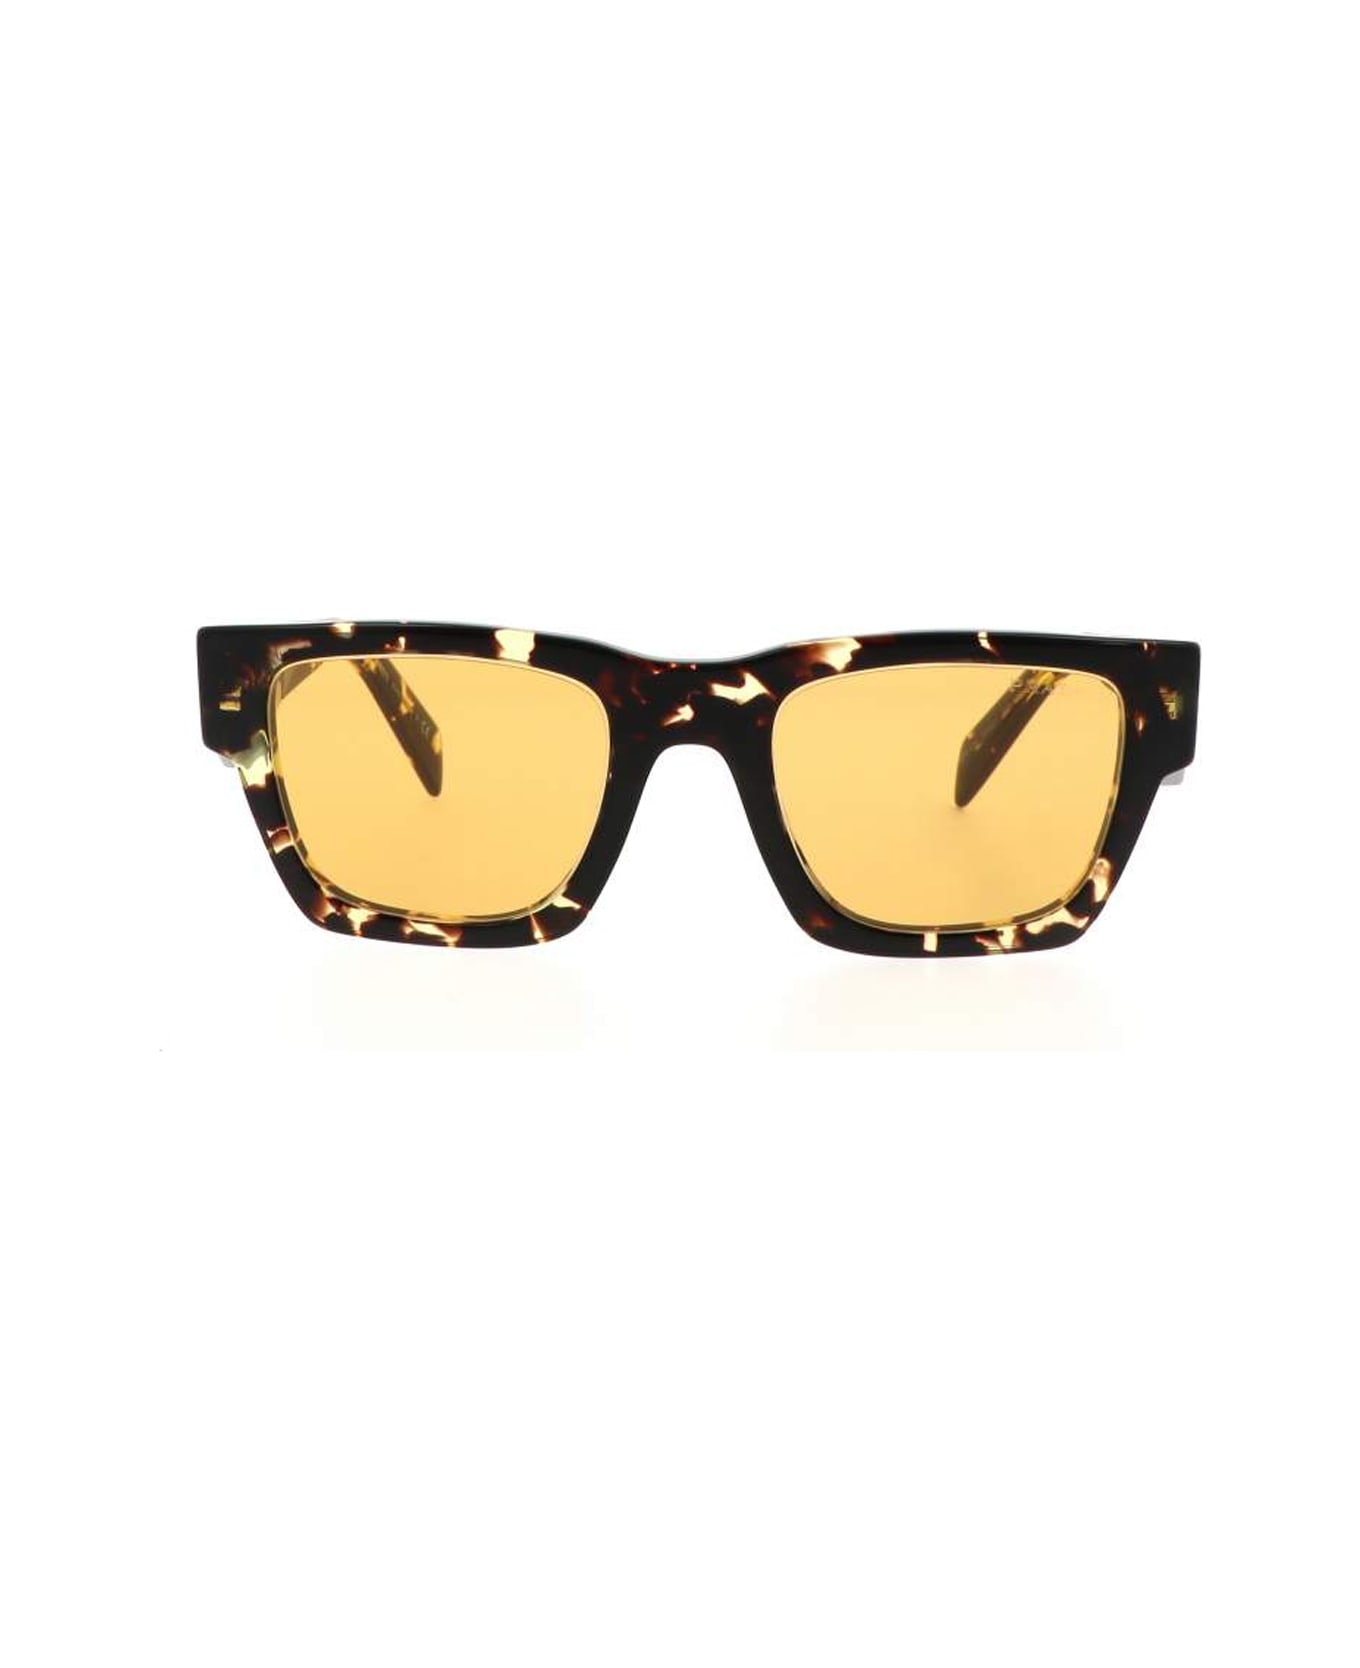 Prada Eyewear Pra06s 16o10c Sunglasses Polarized - Giallo